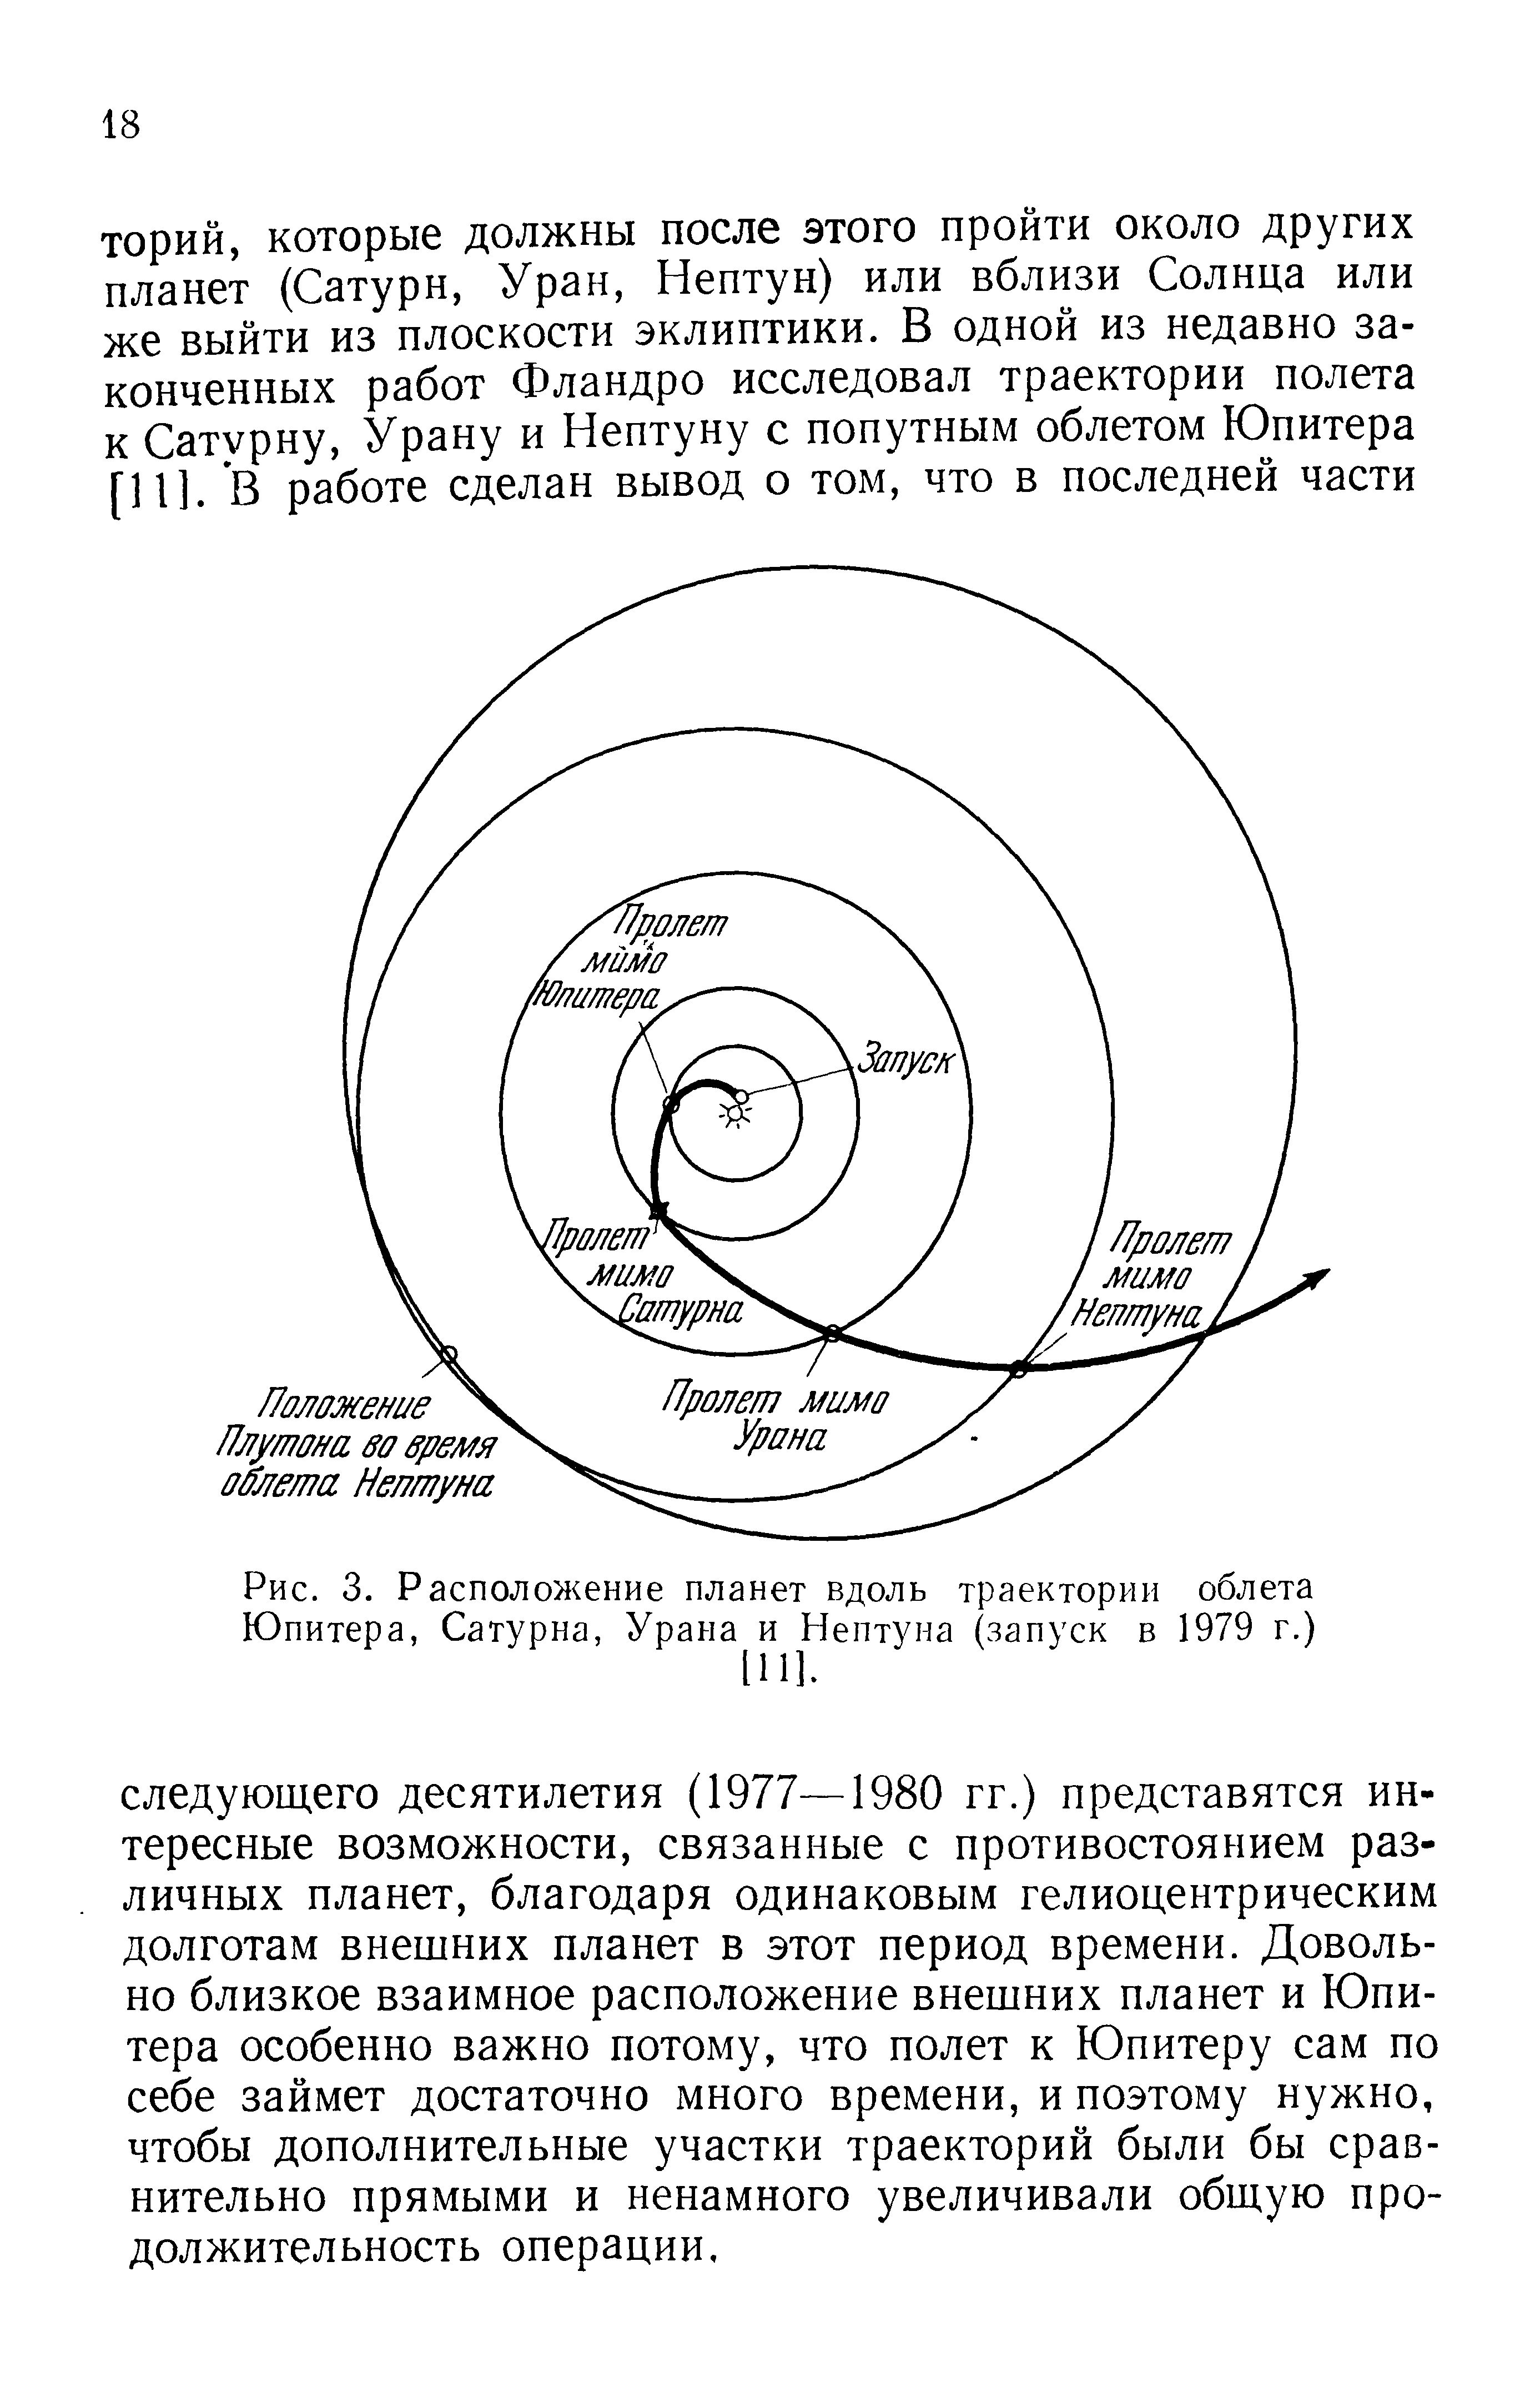 Рис. 3. Расположение планет вдоль траектории облета Юпитера, Сатурна, Урана и Нептуна (запуск в 1979 г.)
